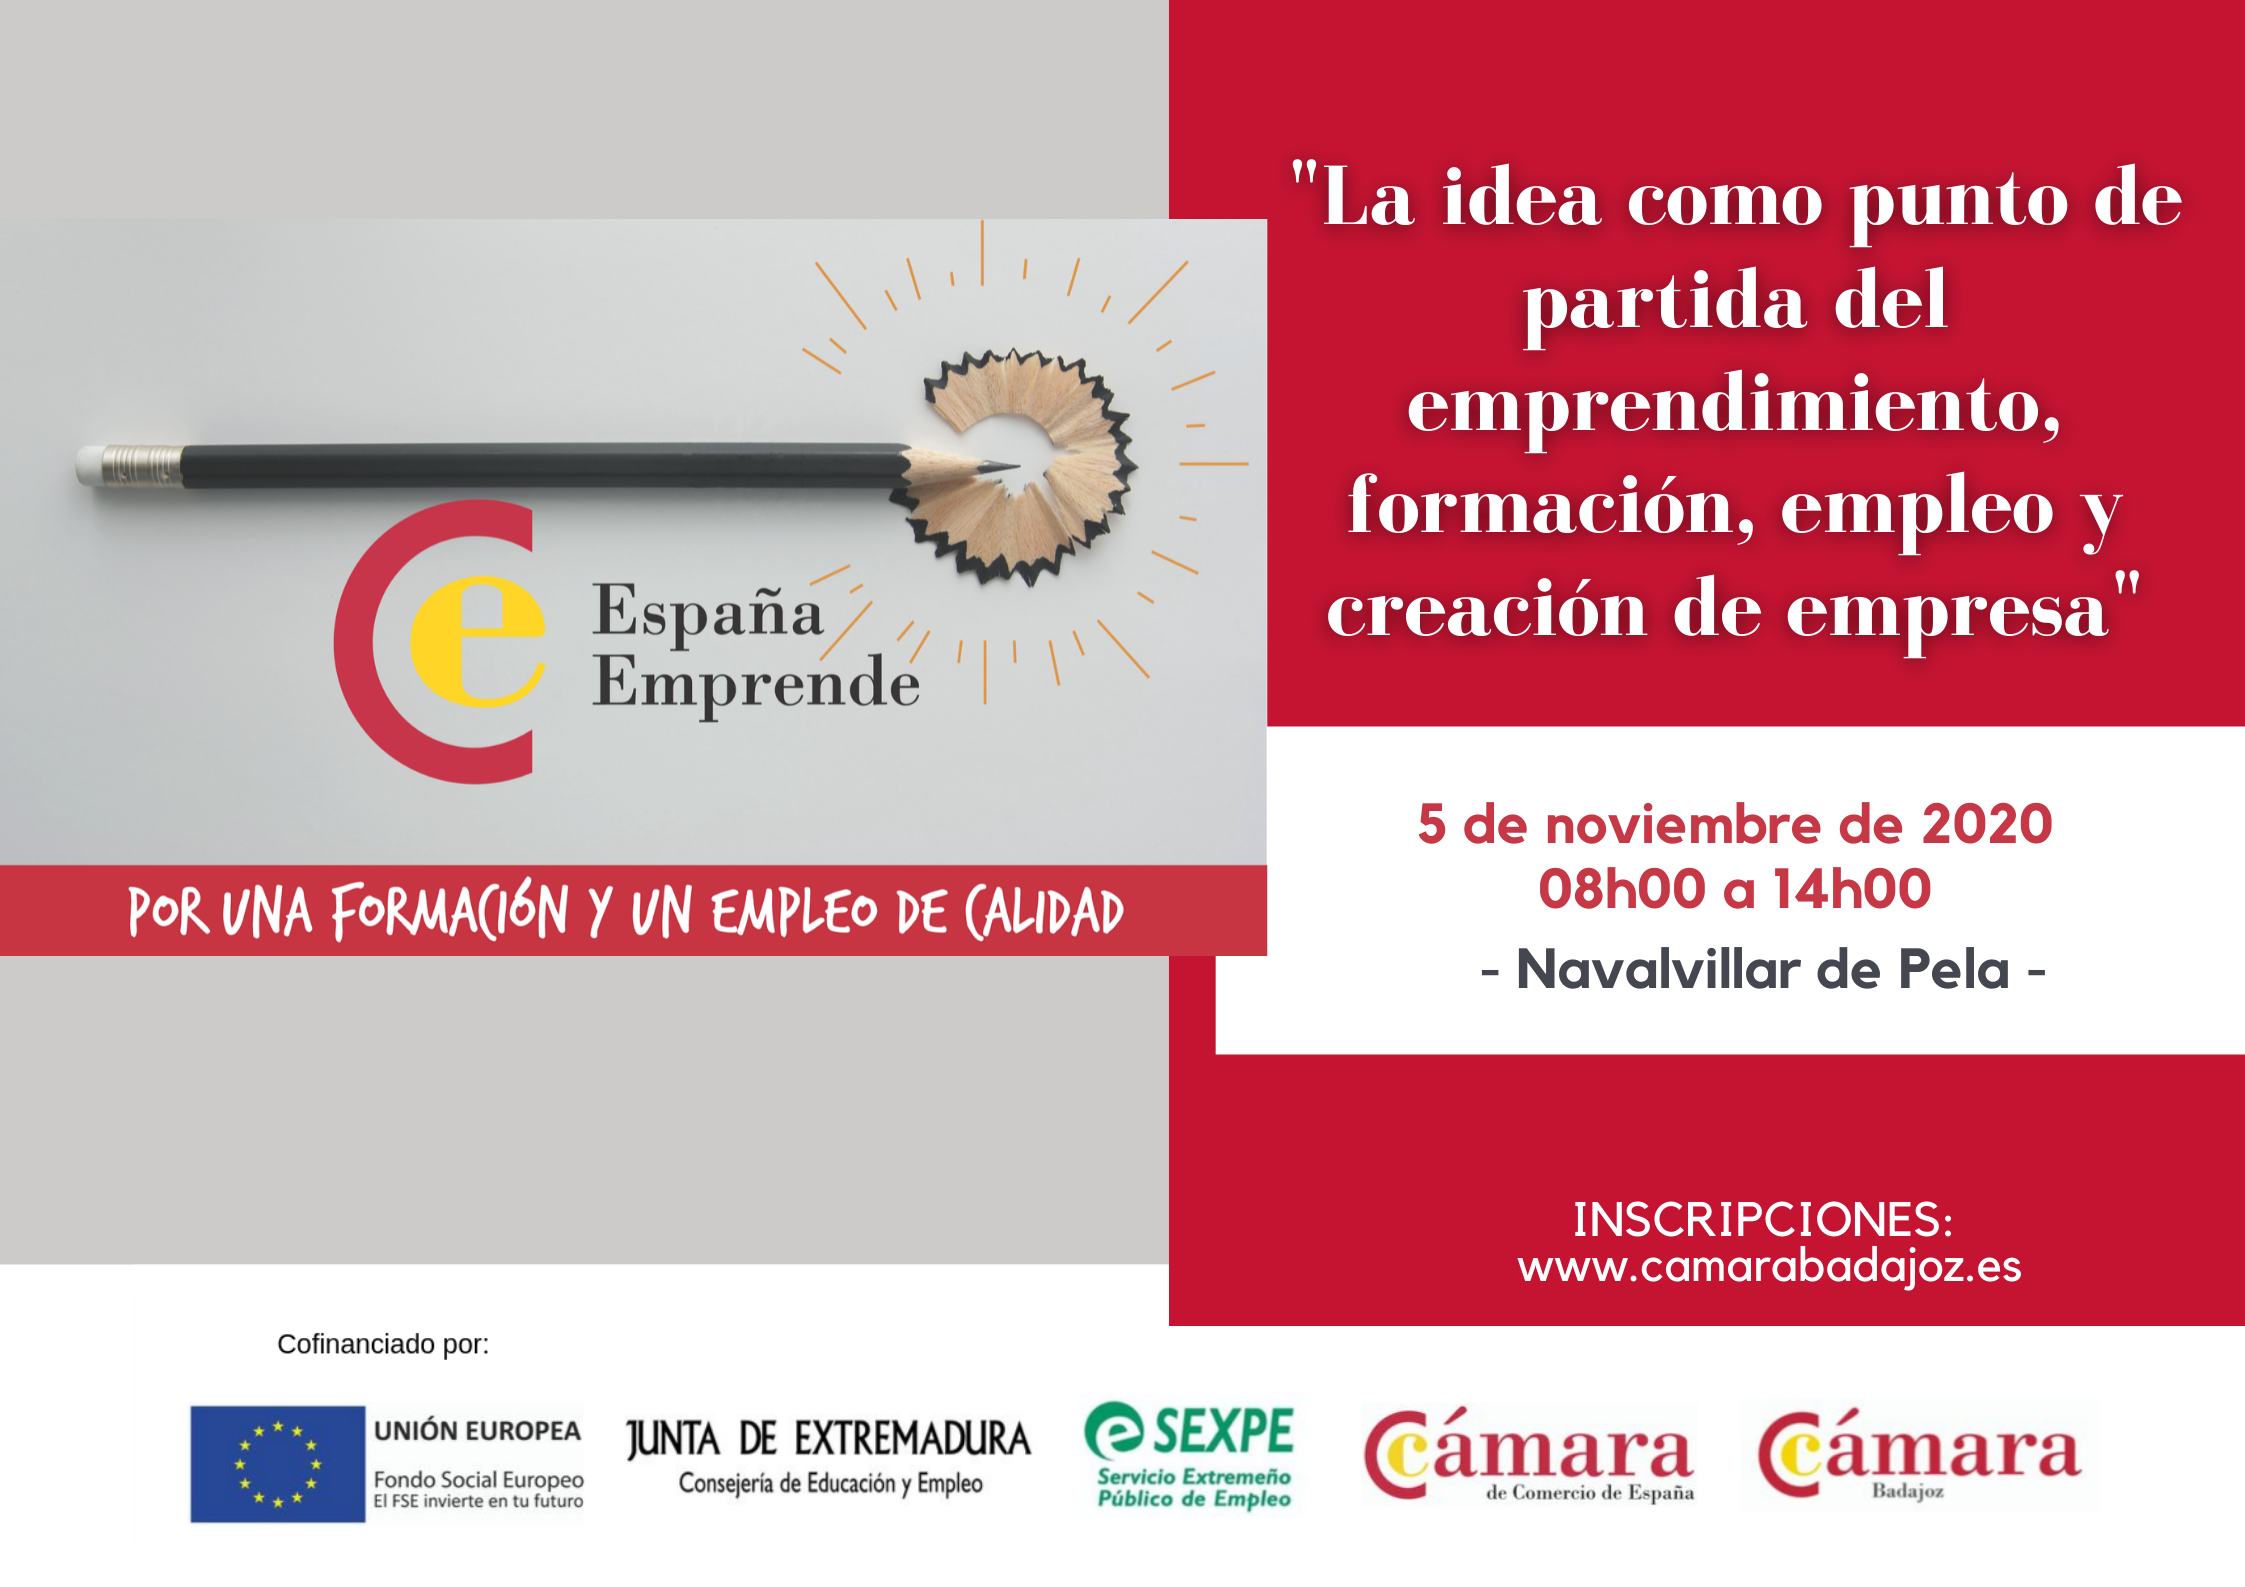 NAVALVILLAR DE PELA - La idea como punto de partida del emprendimiento, formación, empleo y creación de empresa